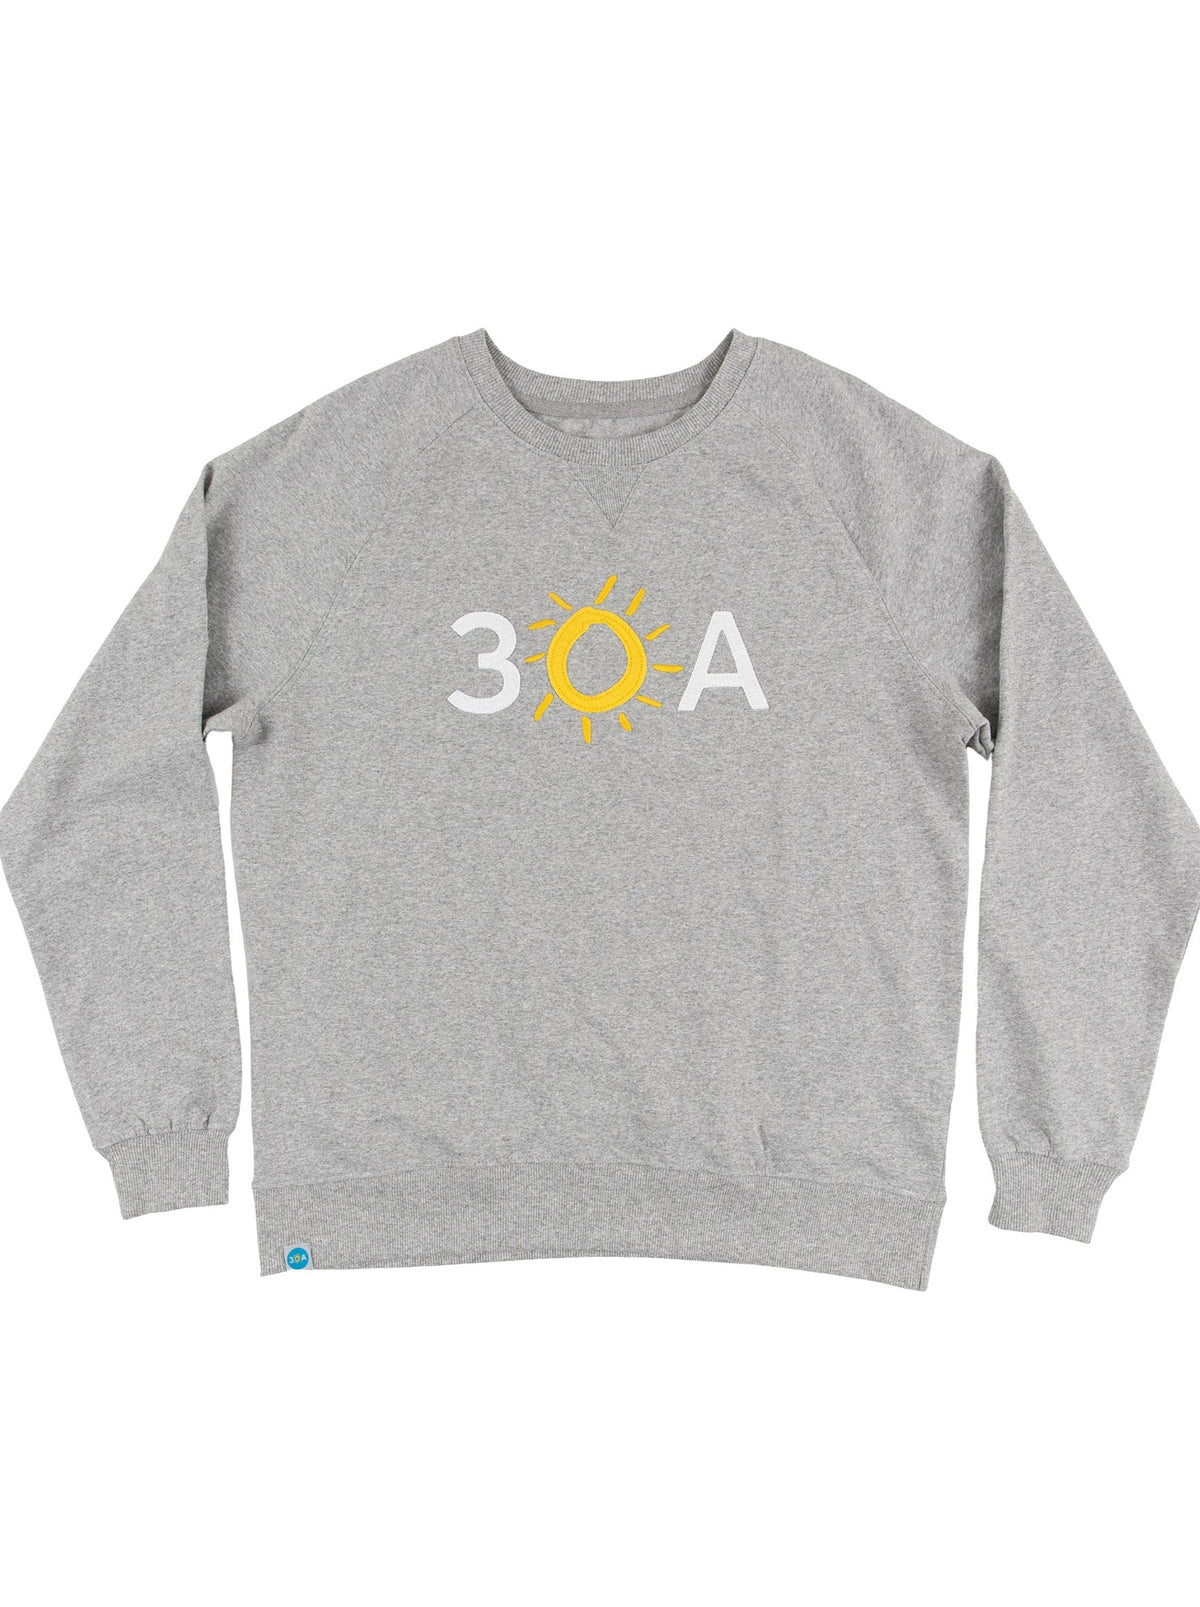 30A Block Logo Applique Sweatshirt